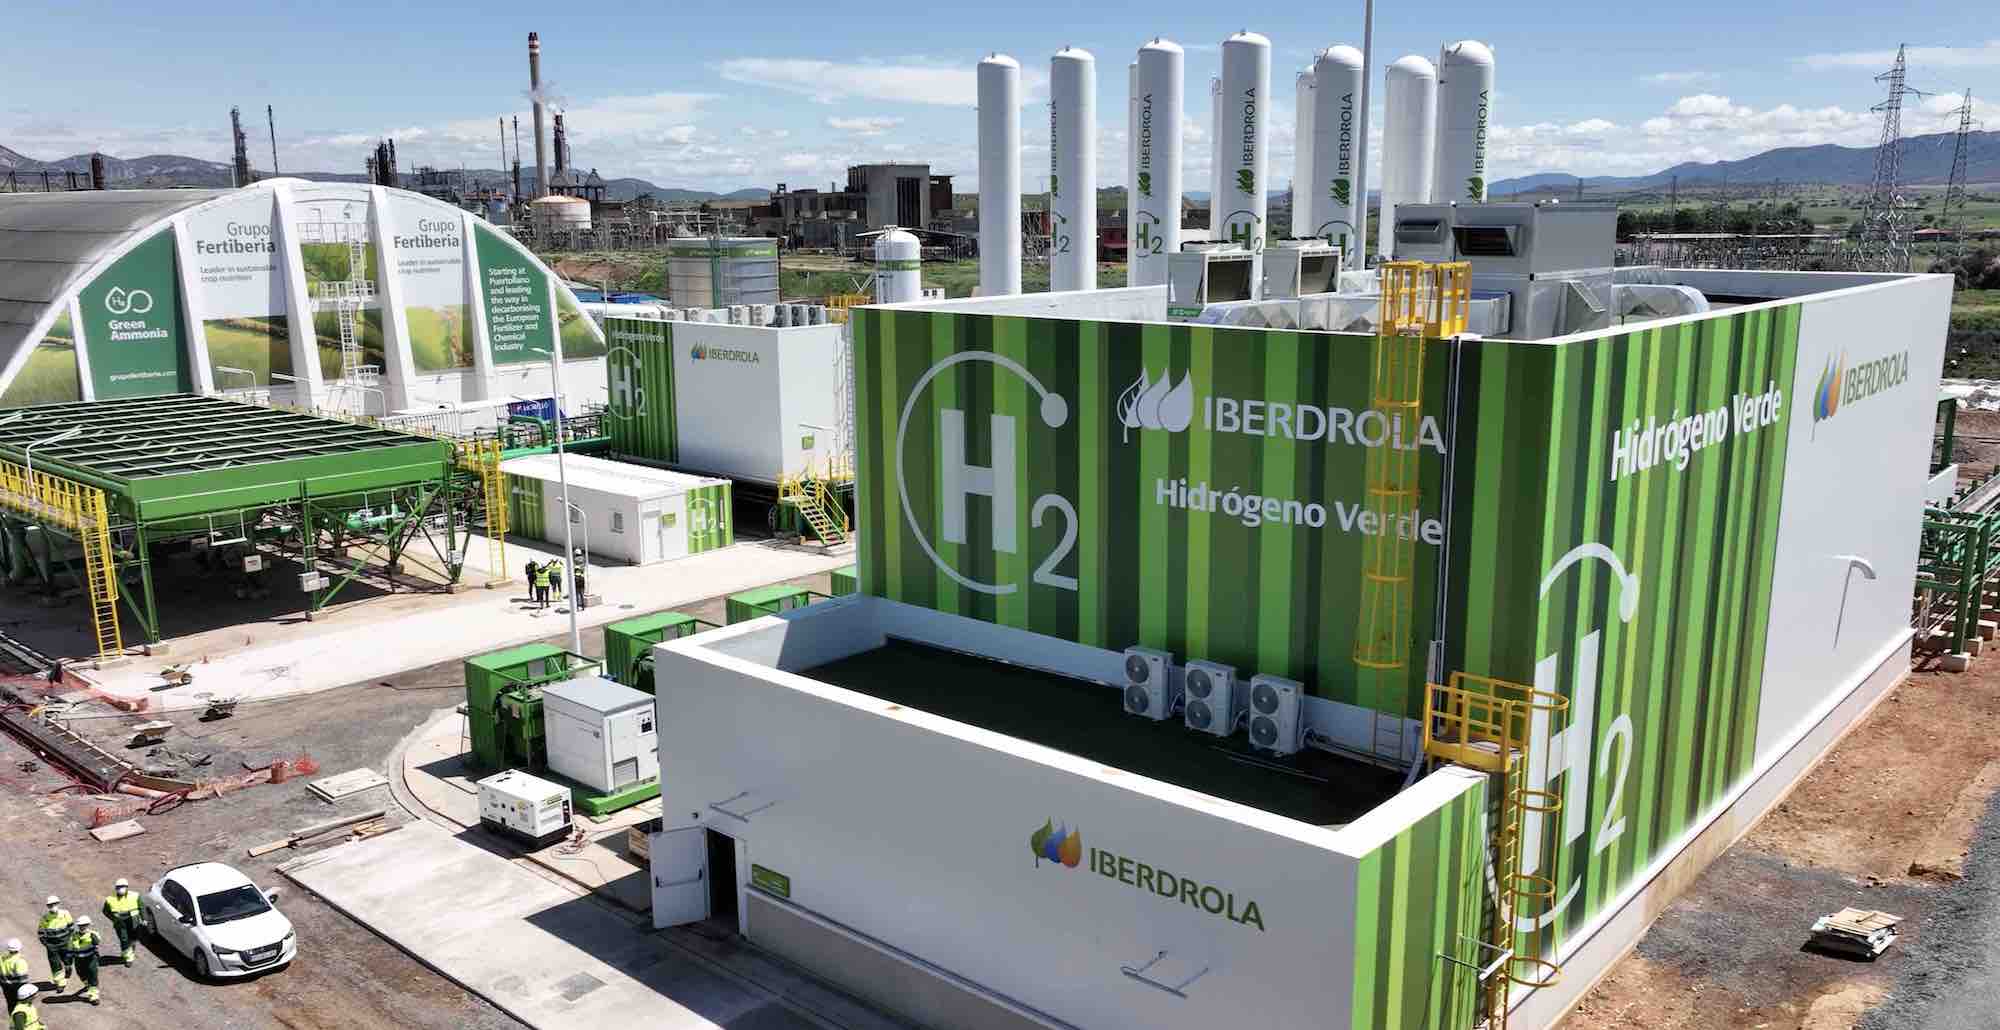 محطة هيدروجين أخضر تابعة لشركة إبيردرولا